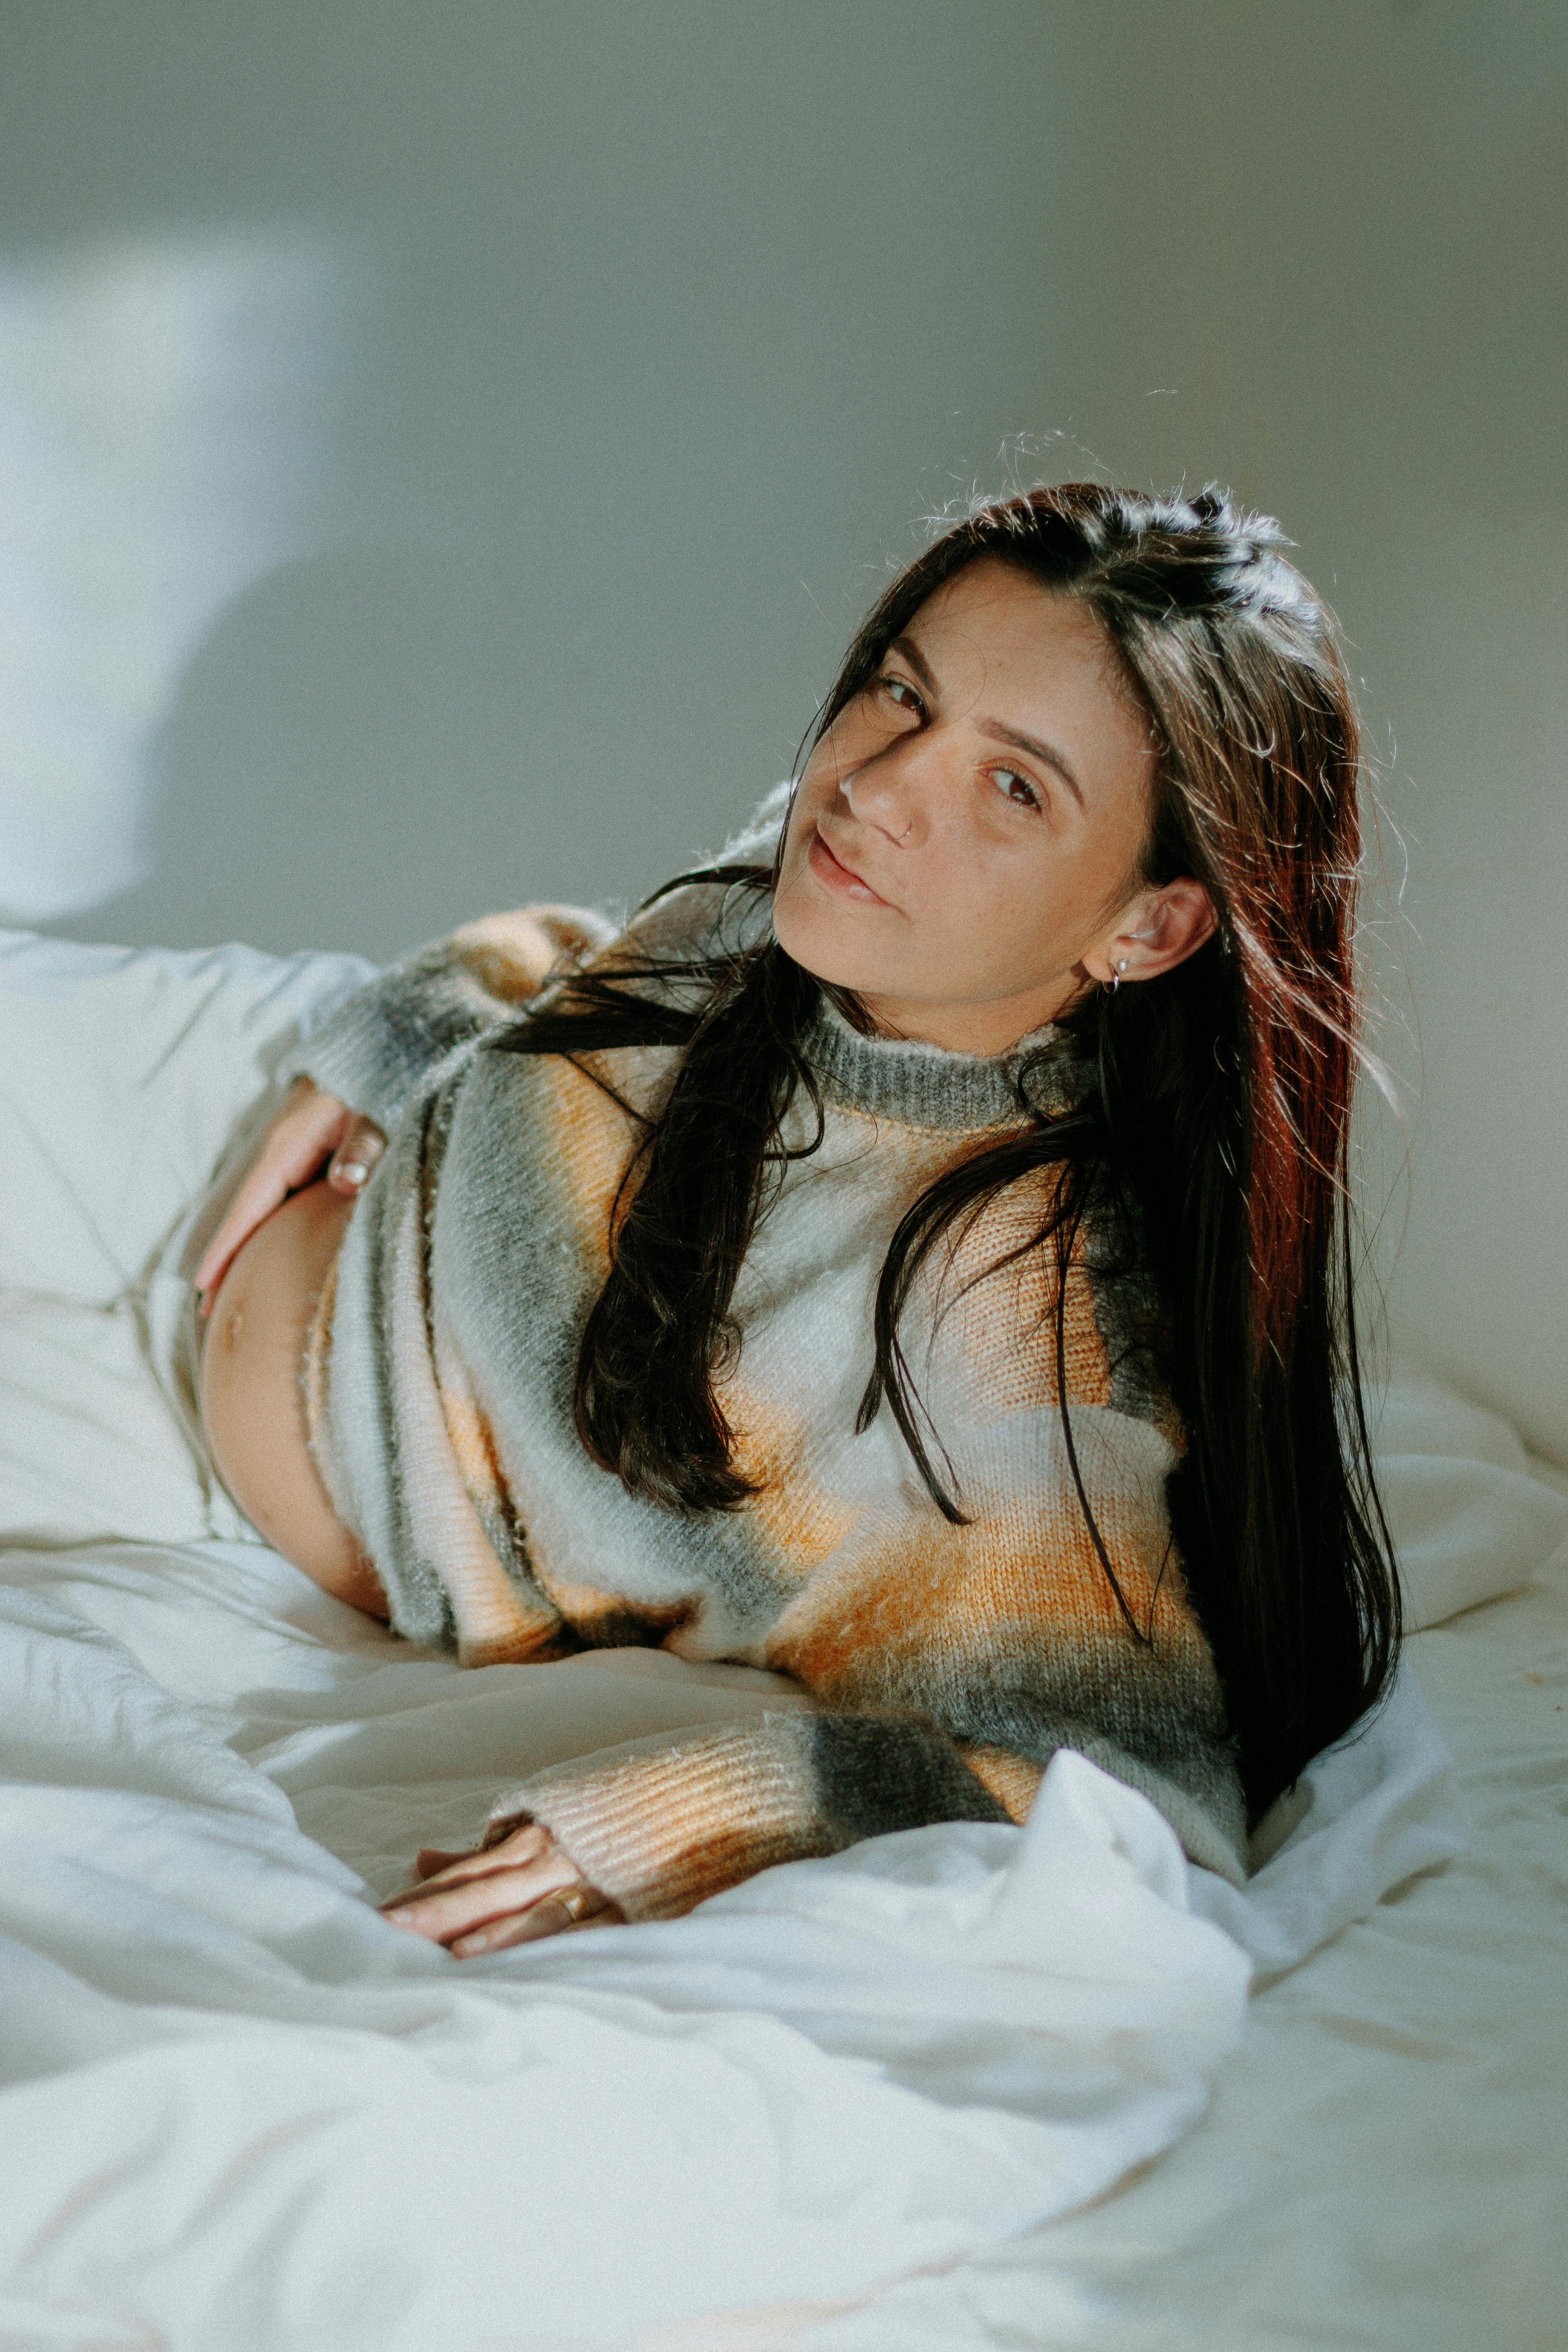 Eine schwangere Frau, die unzufrieden auf einem Bett liegt | Quelle: Pexels